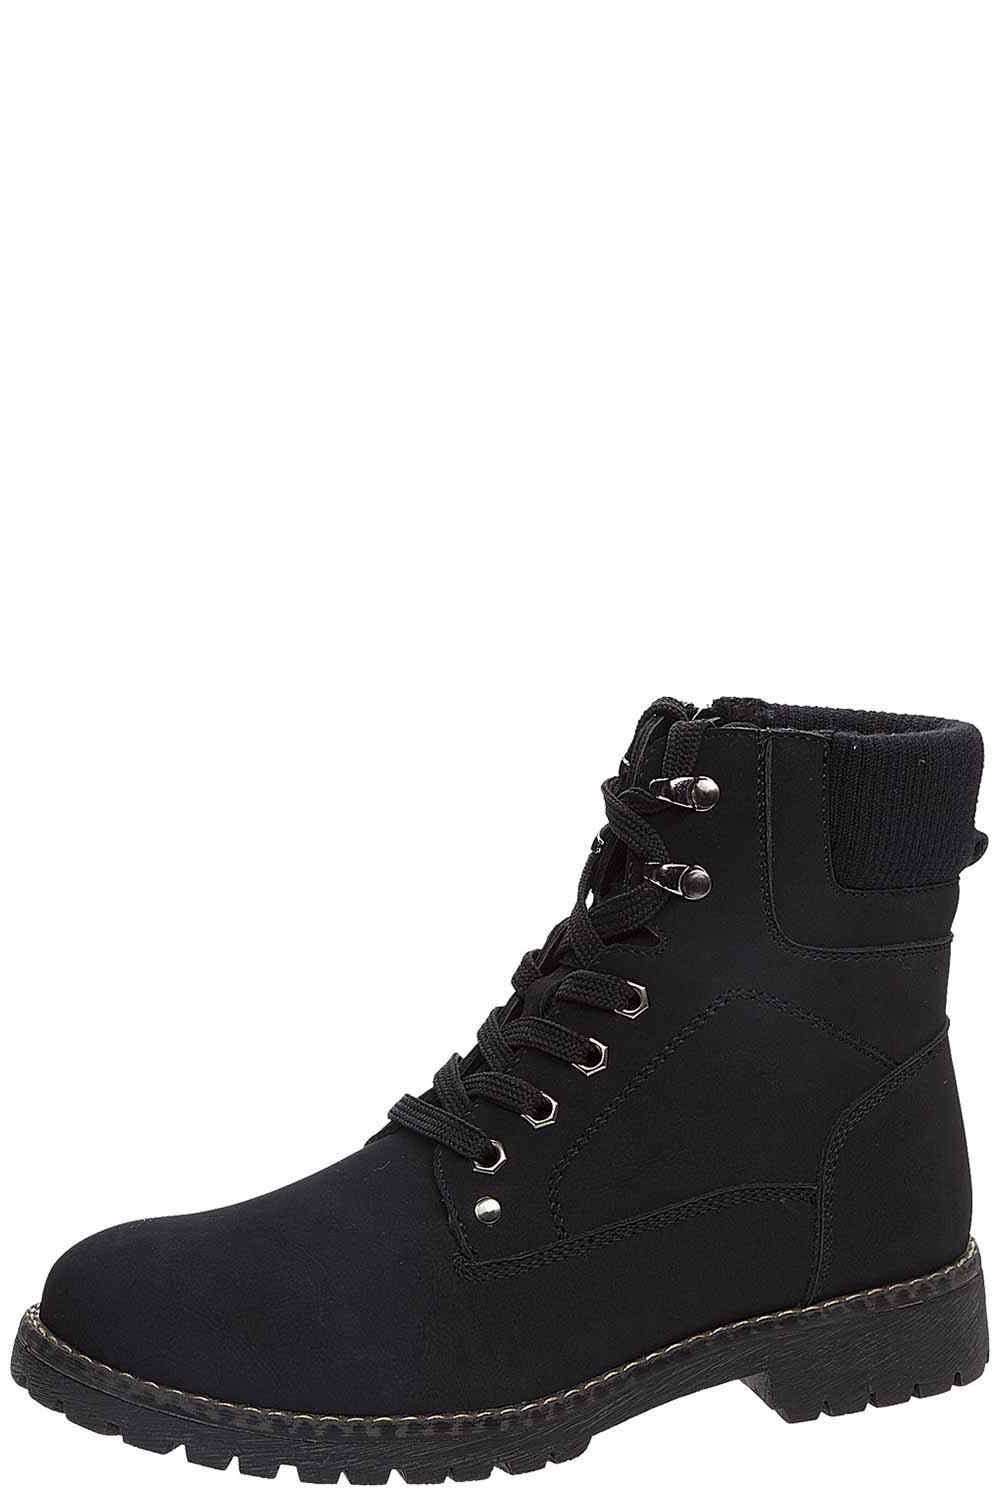 Ботинки Keddo, размер 40, цвет черный 578609/01-01 - фото 1